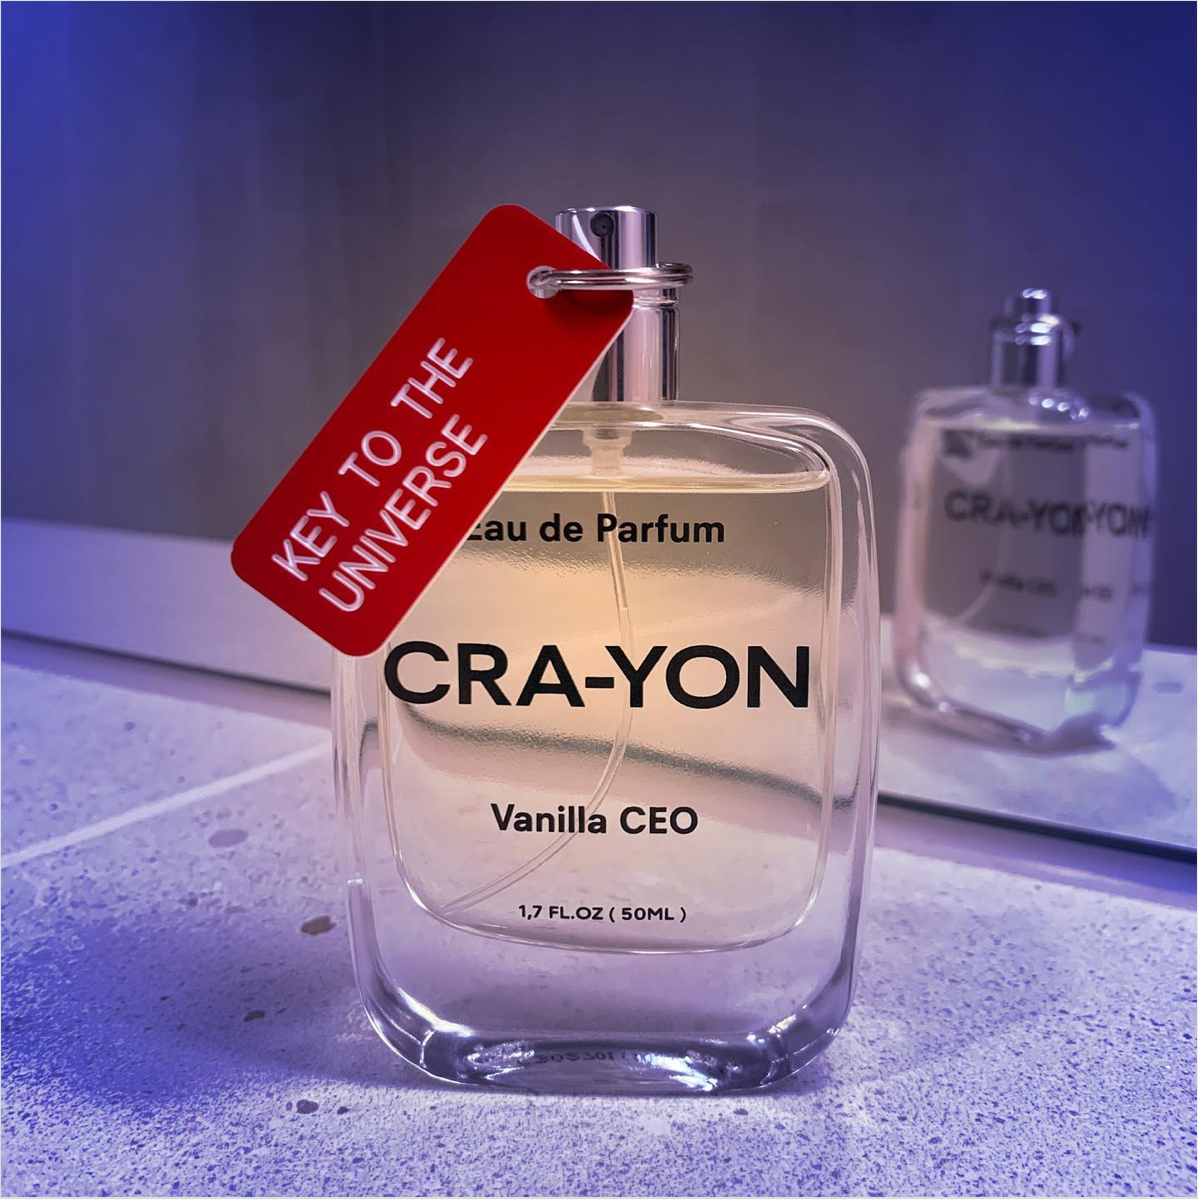 Vanilla CEO, Eau de Parfum | CRA-YON Parfums